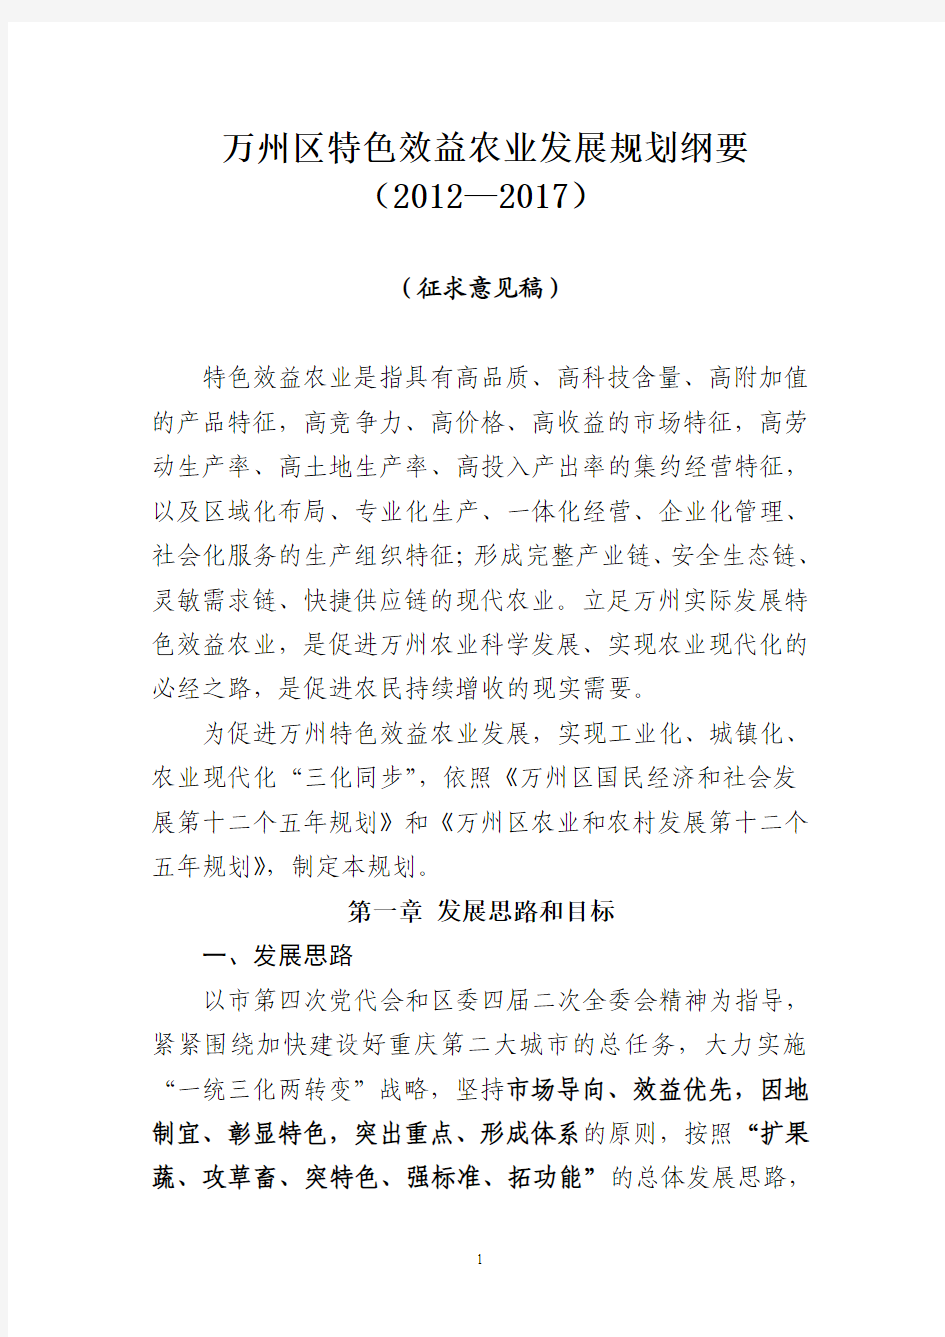 重庆市万州区特色效益农业规划(8.15)